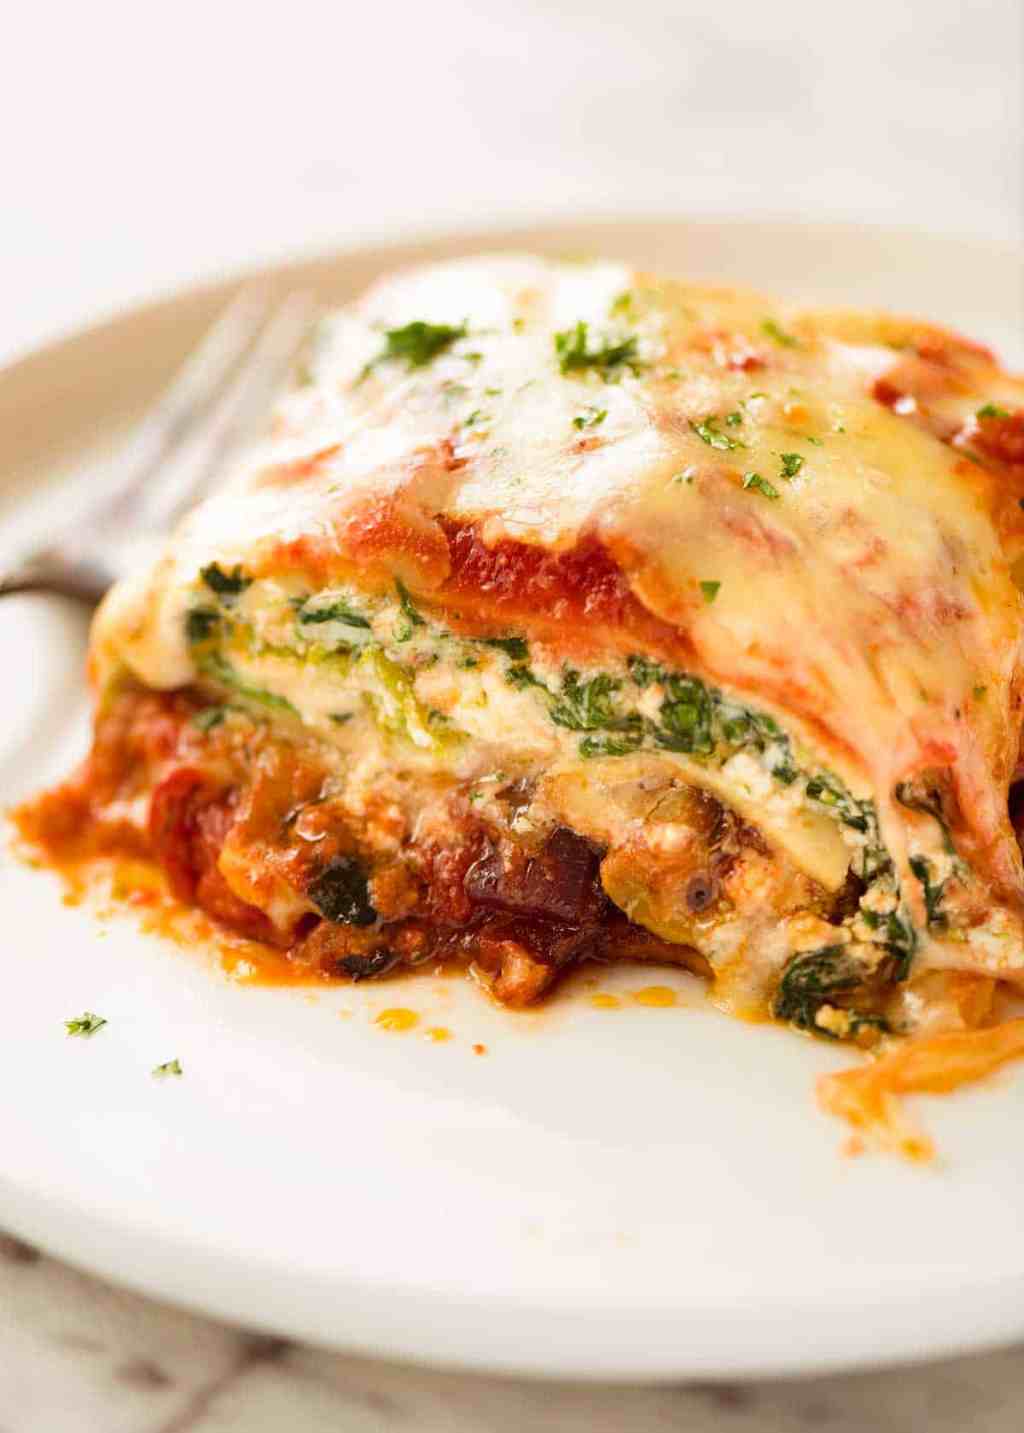 Meatless Italian Lasagna Recipe